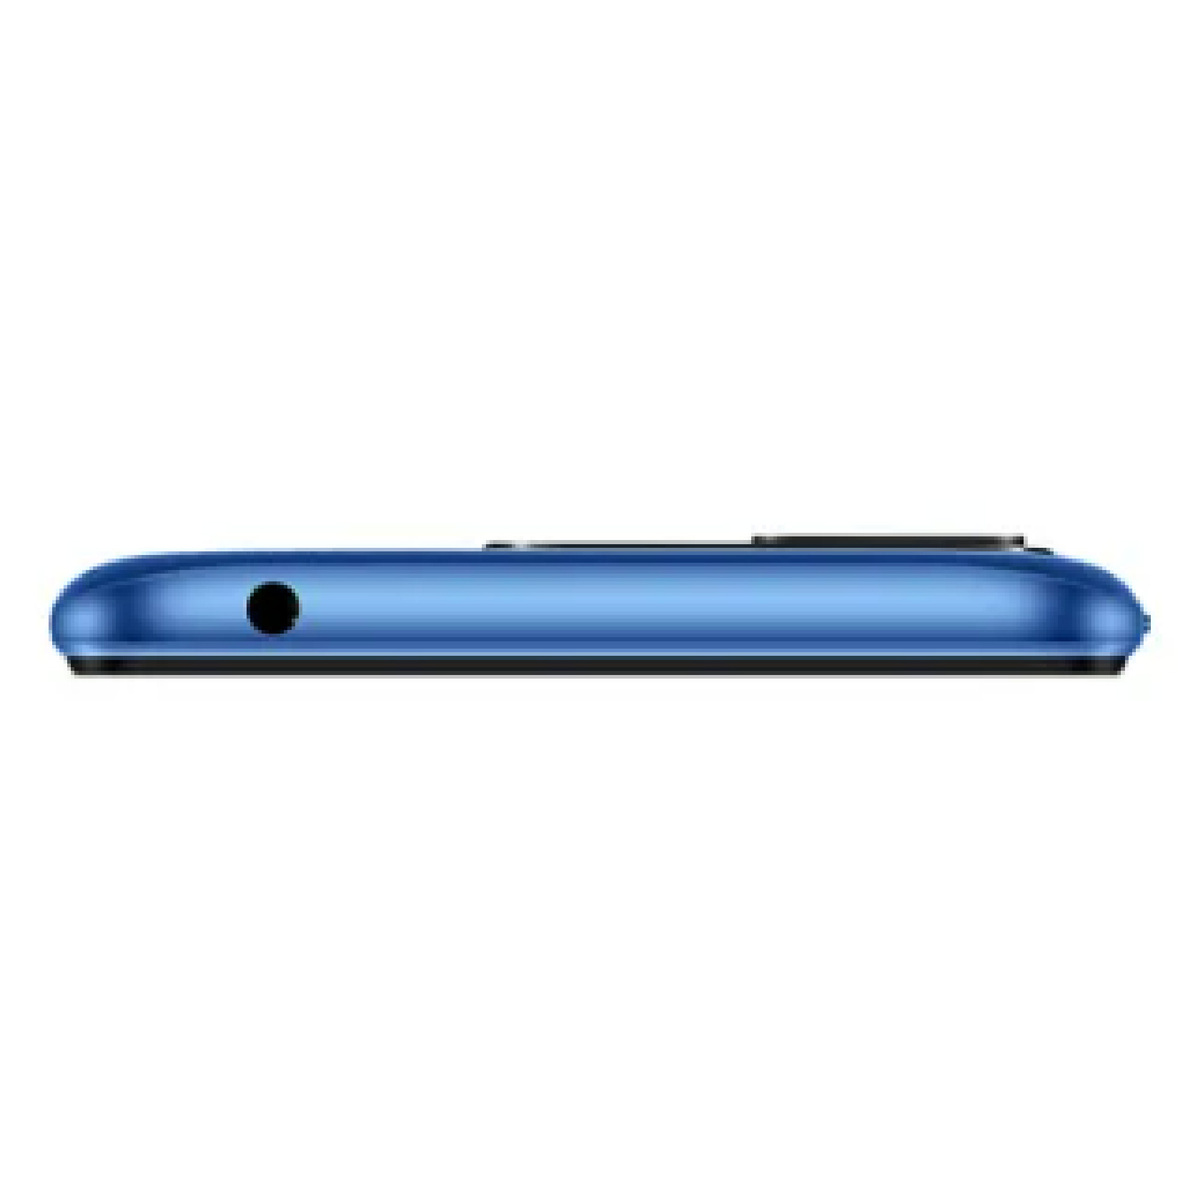 XIAOMI Redmi 10A 4G, Blue (Sky Blue), 4GB RAM, 128 GB Storage